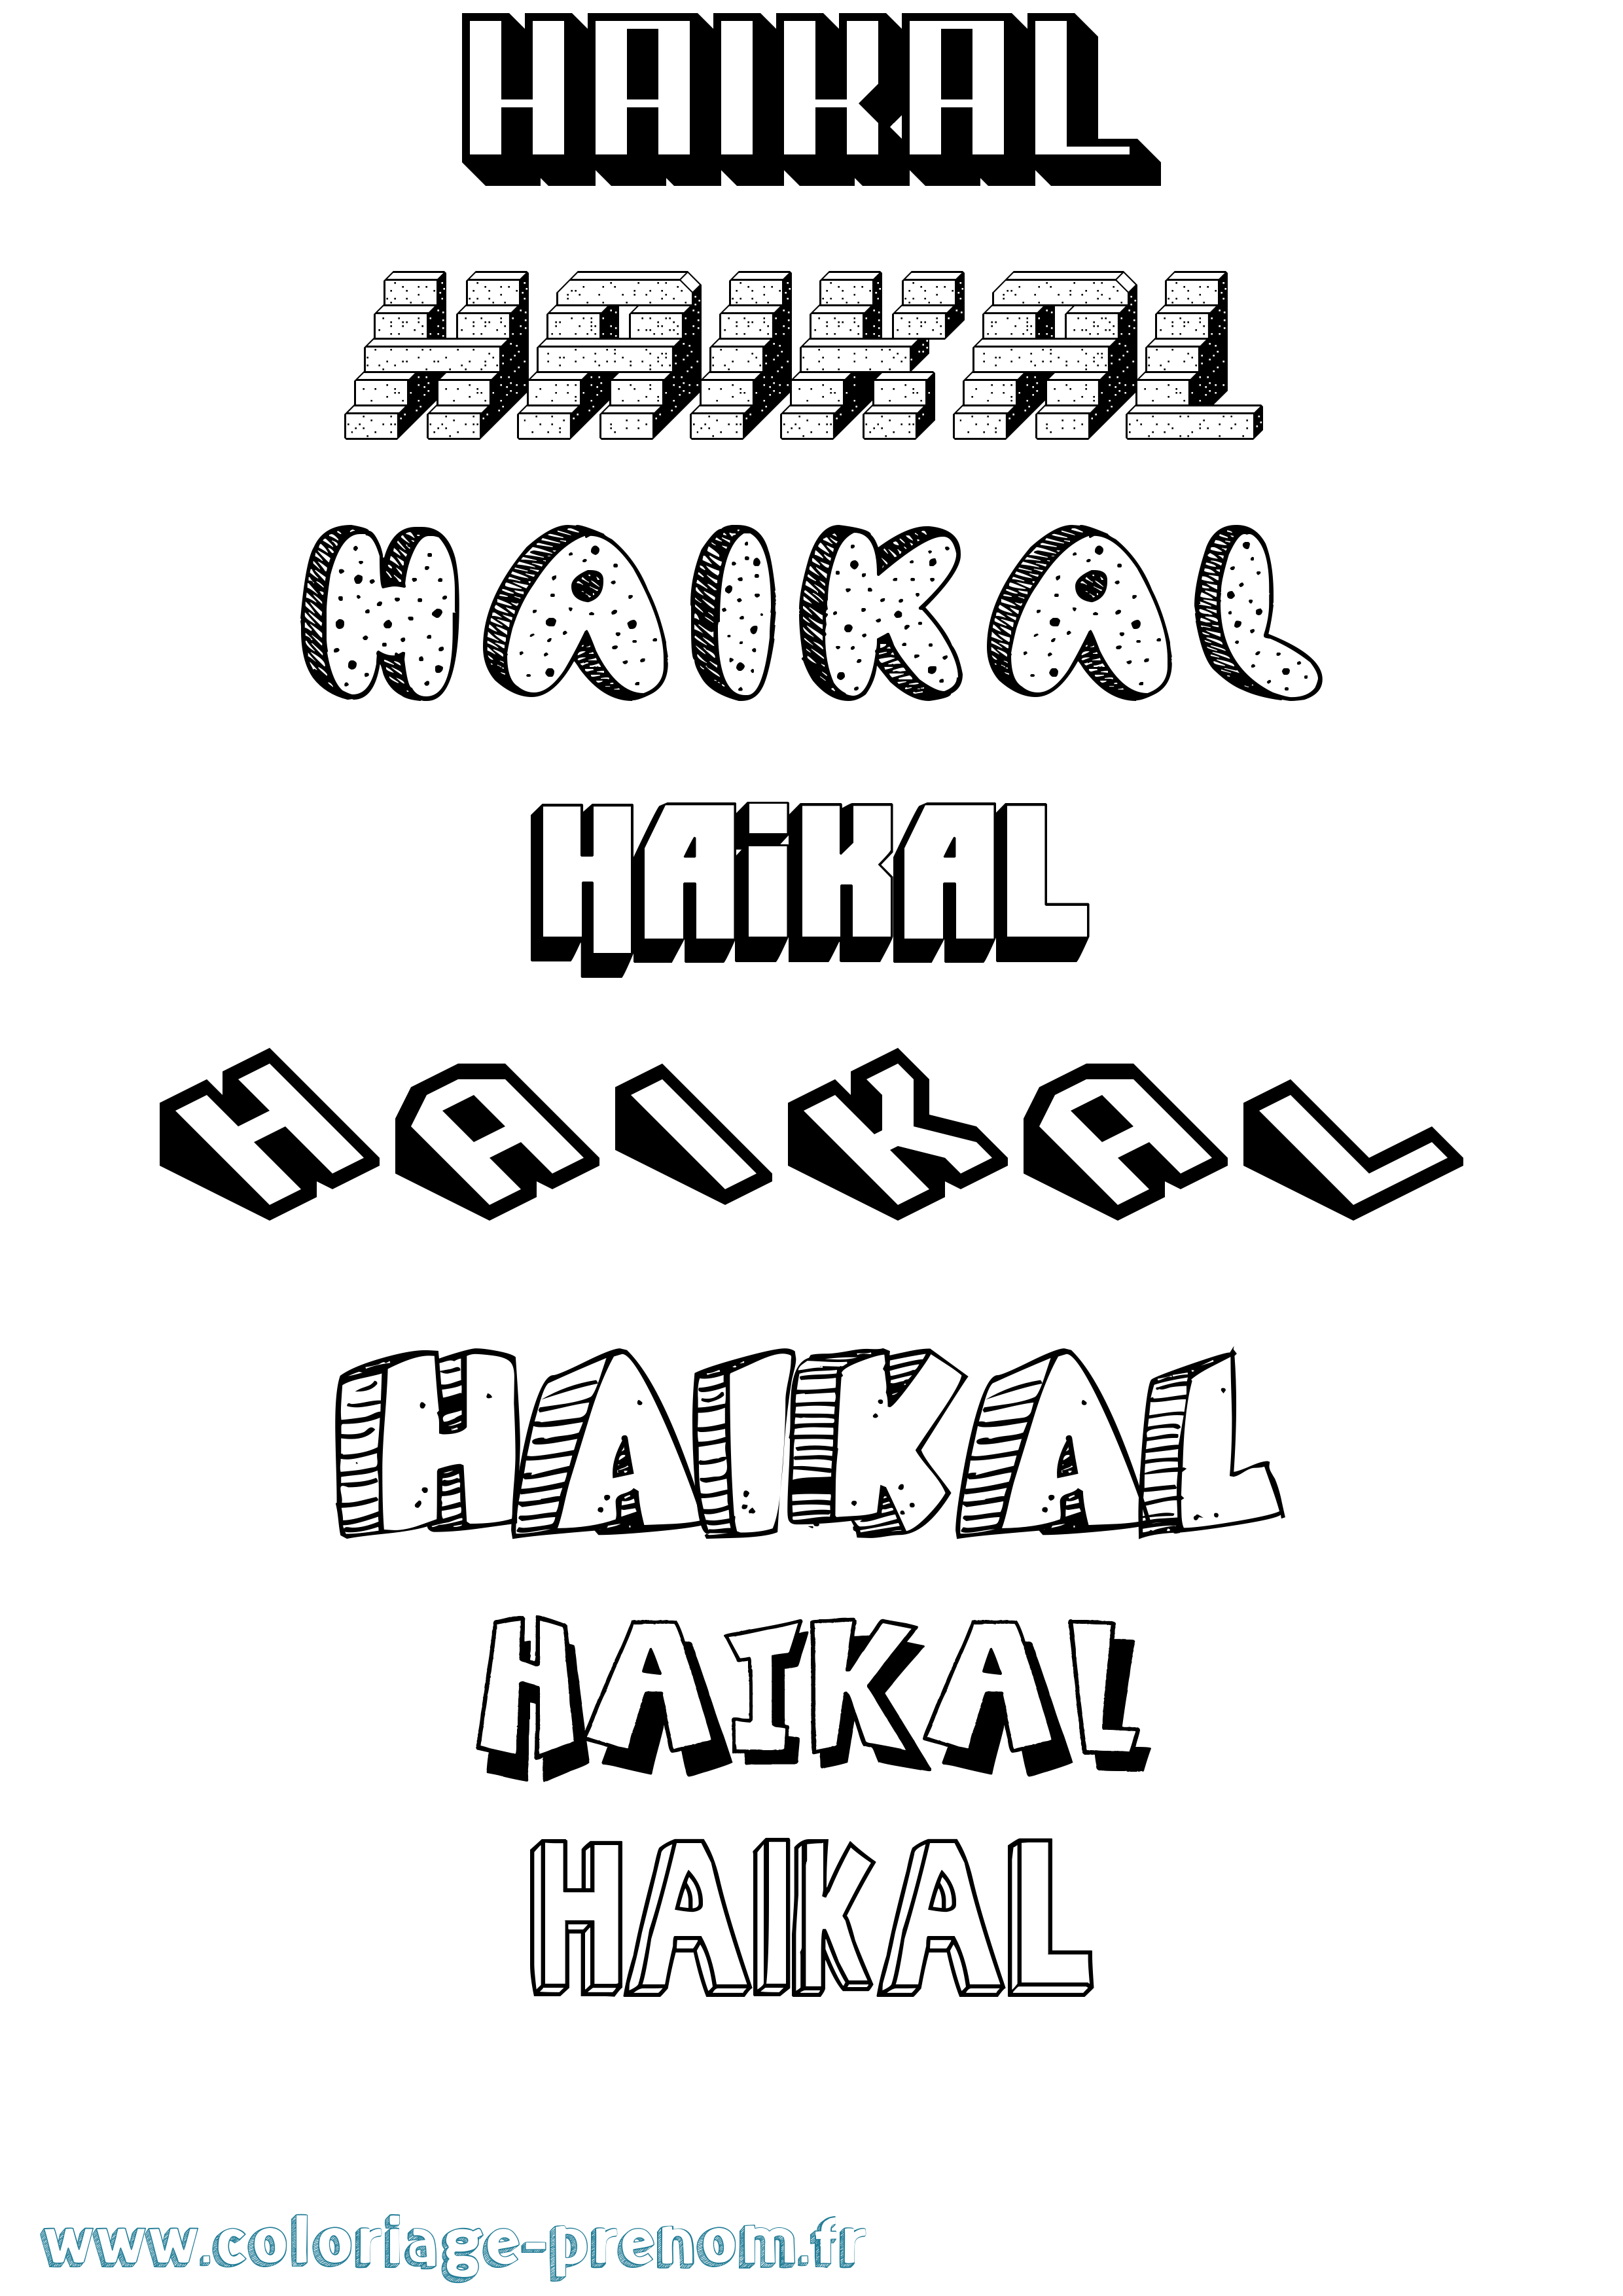 Coloriage prénom Haikal Effet 3D